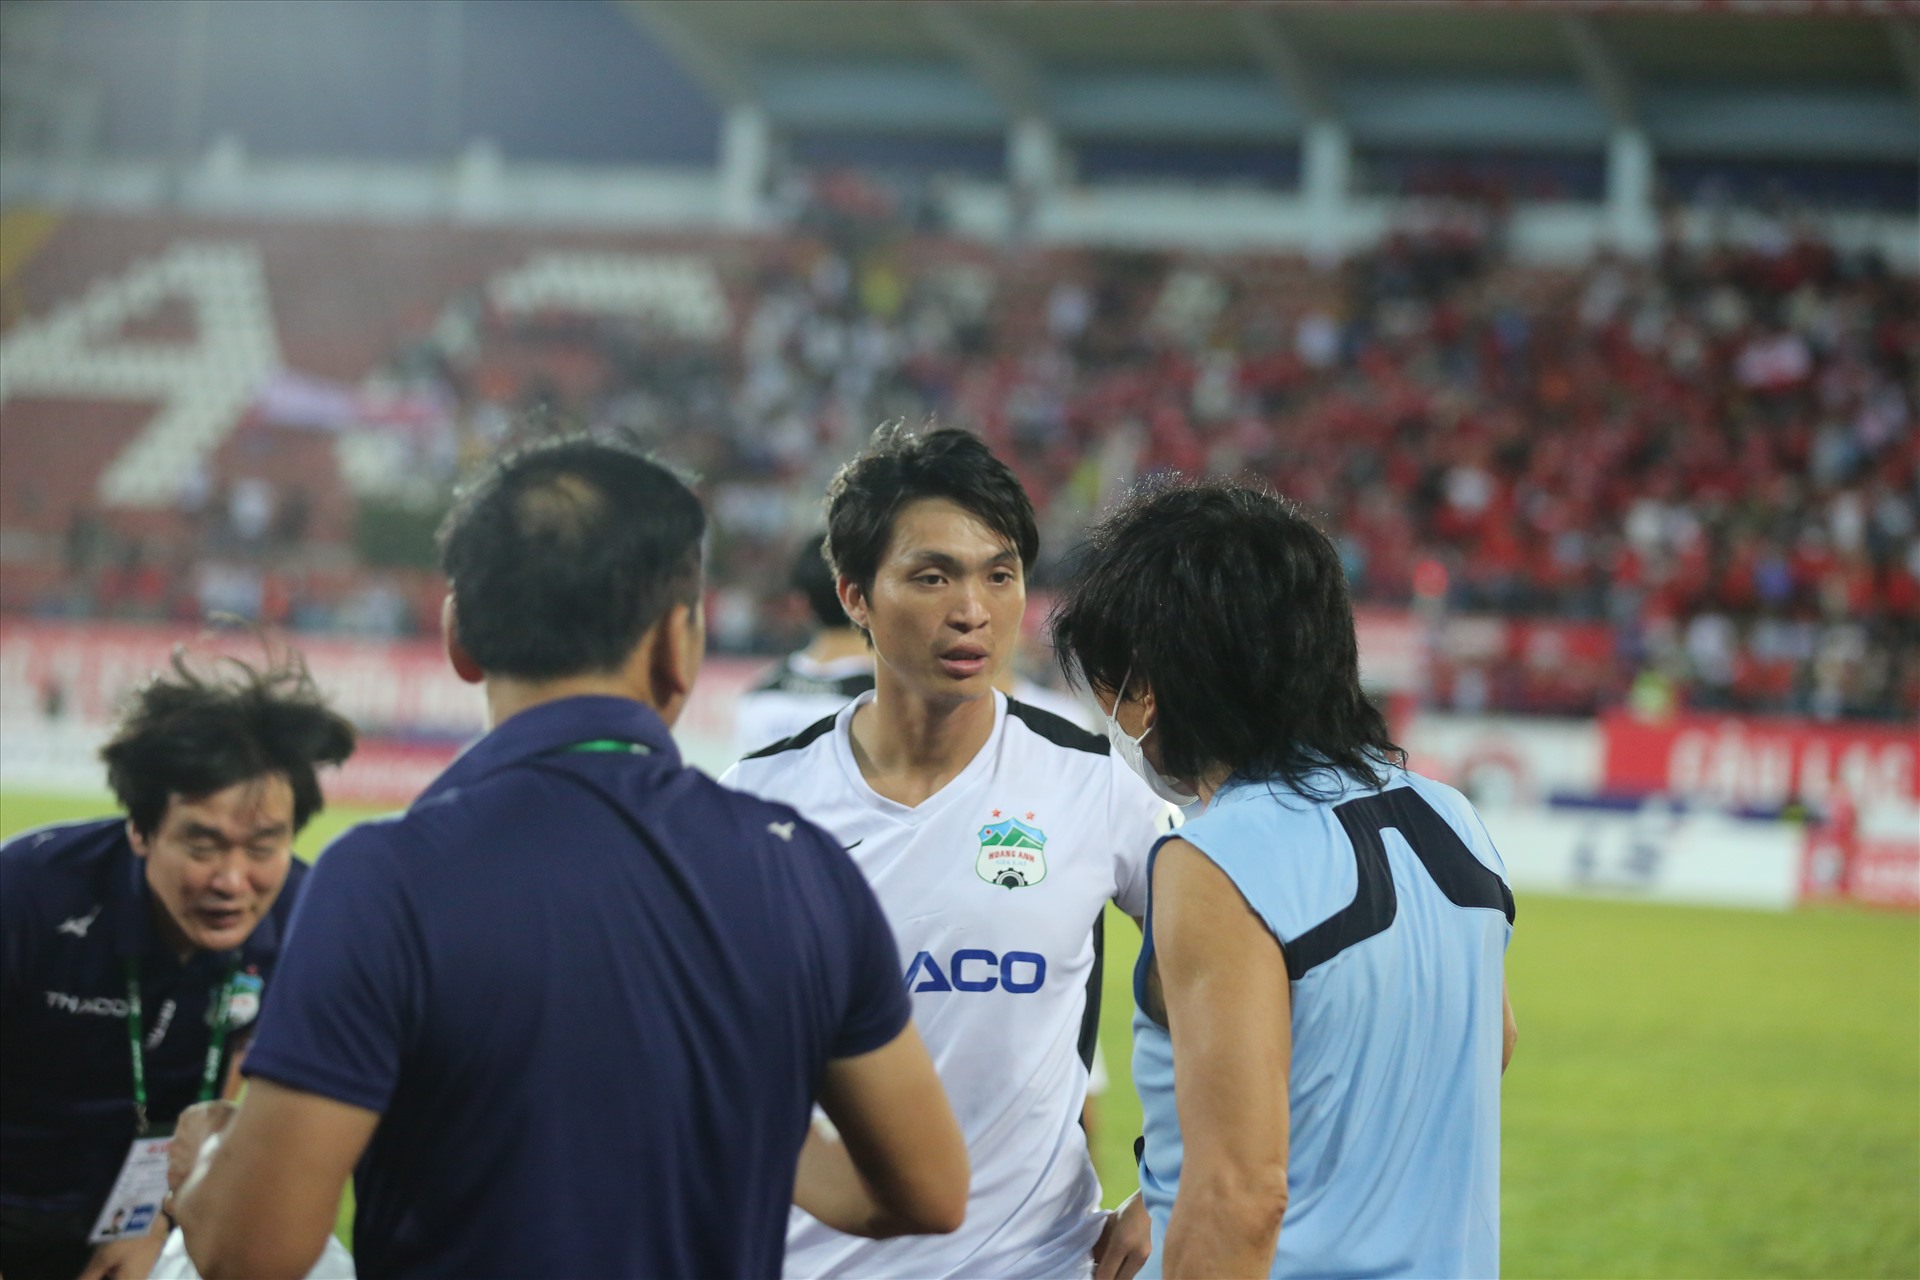 Một cầu thủ khác của Hoàng Anh Gia Lai cũng dính chấn thương là Tuấn Anh. Tiền vệ người Thái Bình được chuyên gia Choi Young Jin thăm hỏi sau trận đấu về tình hình cụ thể.